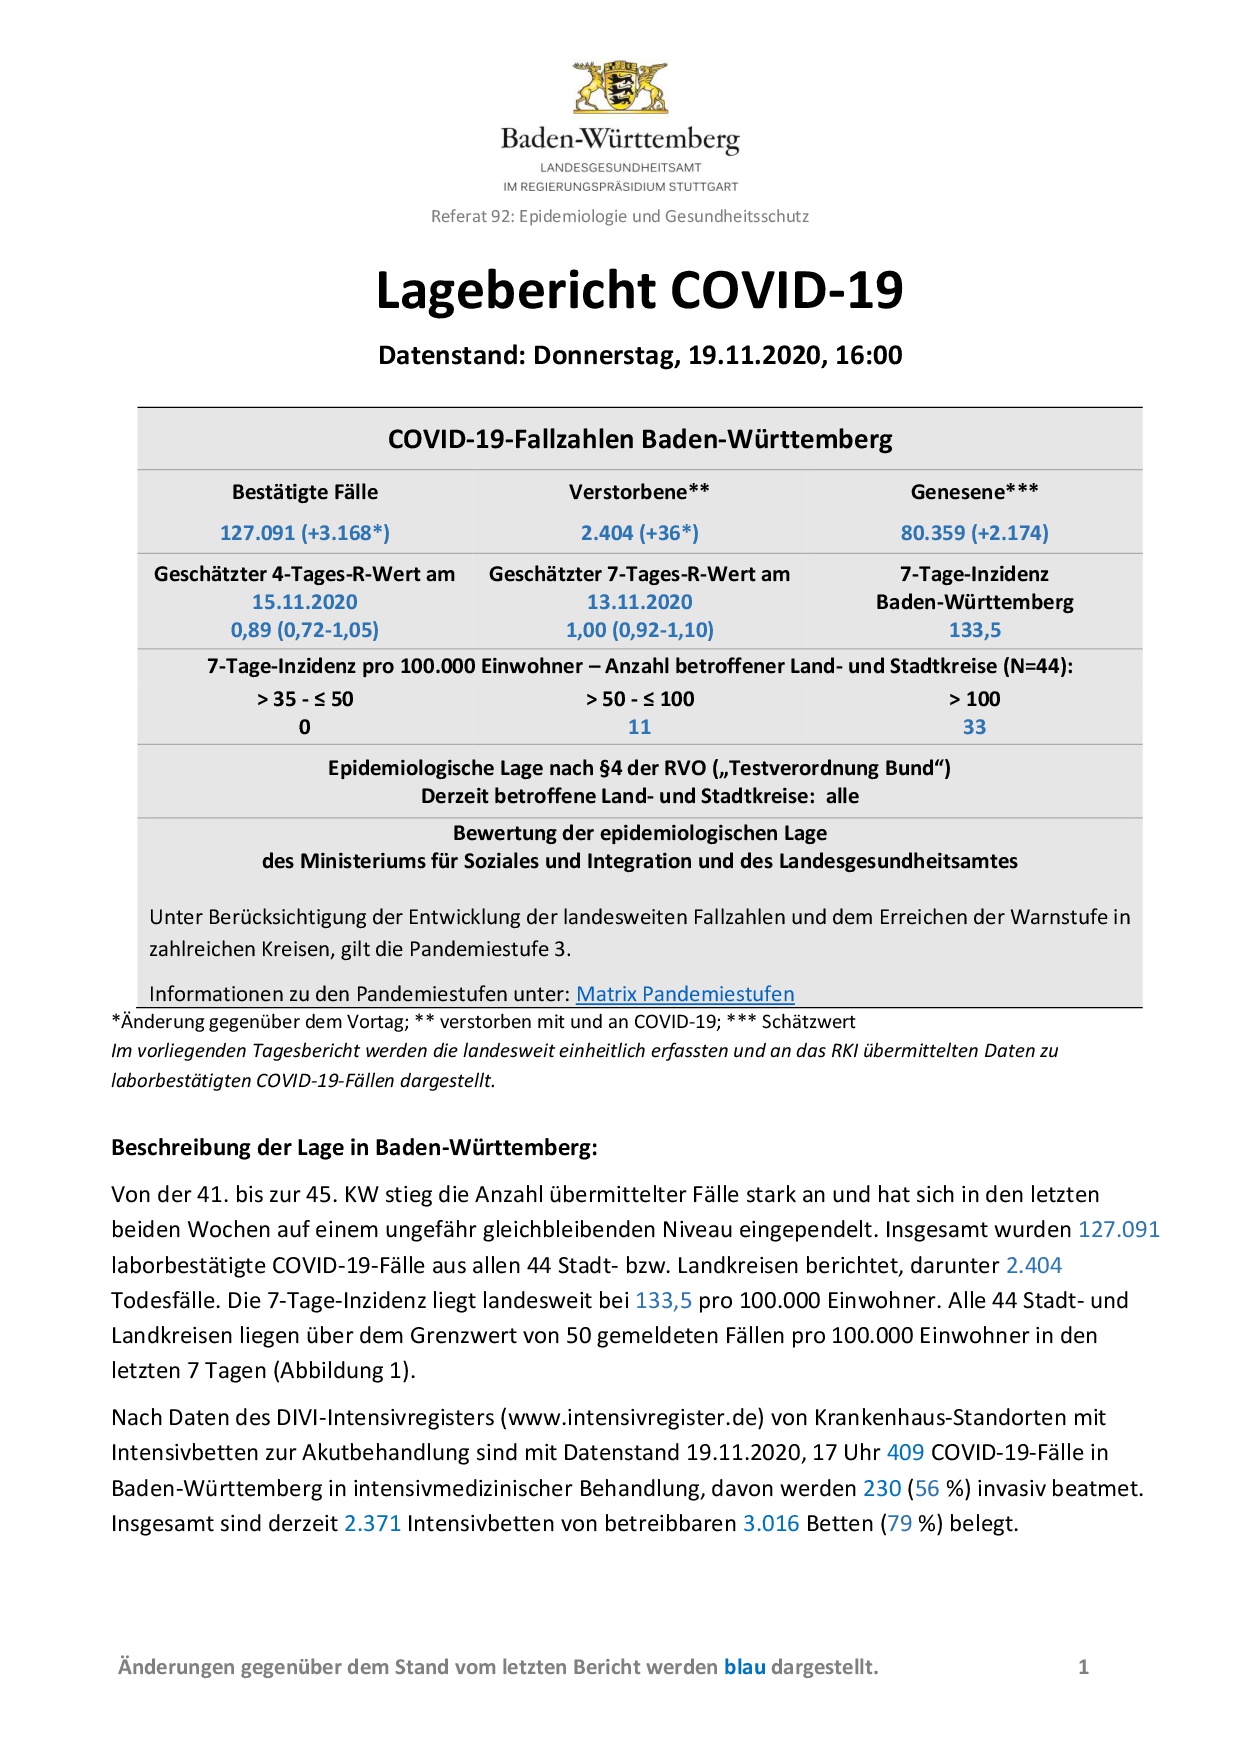 COVID-19 Tagesbericht (19.11.2020) des Landesgesundheitsamts Baden-Württemberg – (ausführlicher)